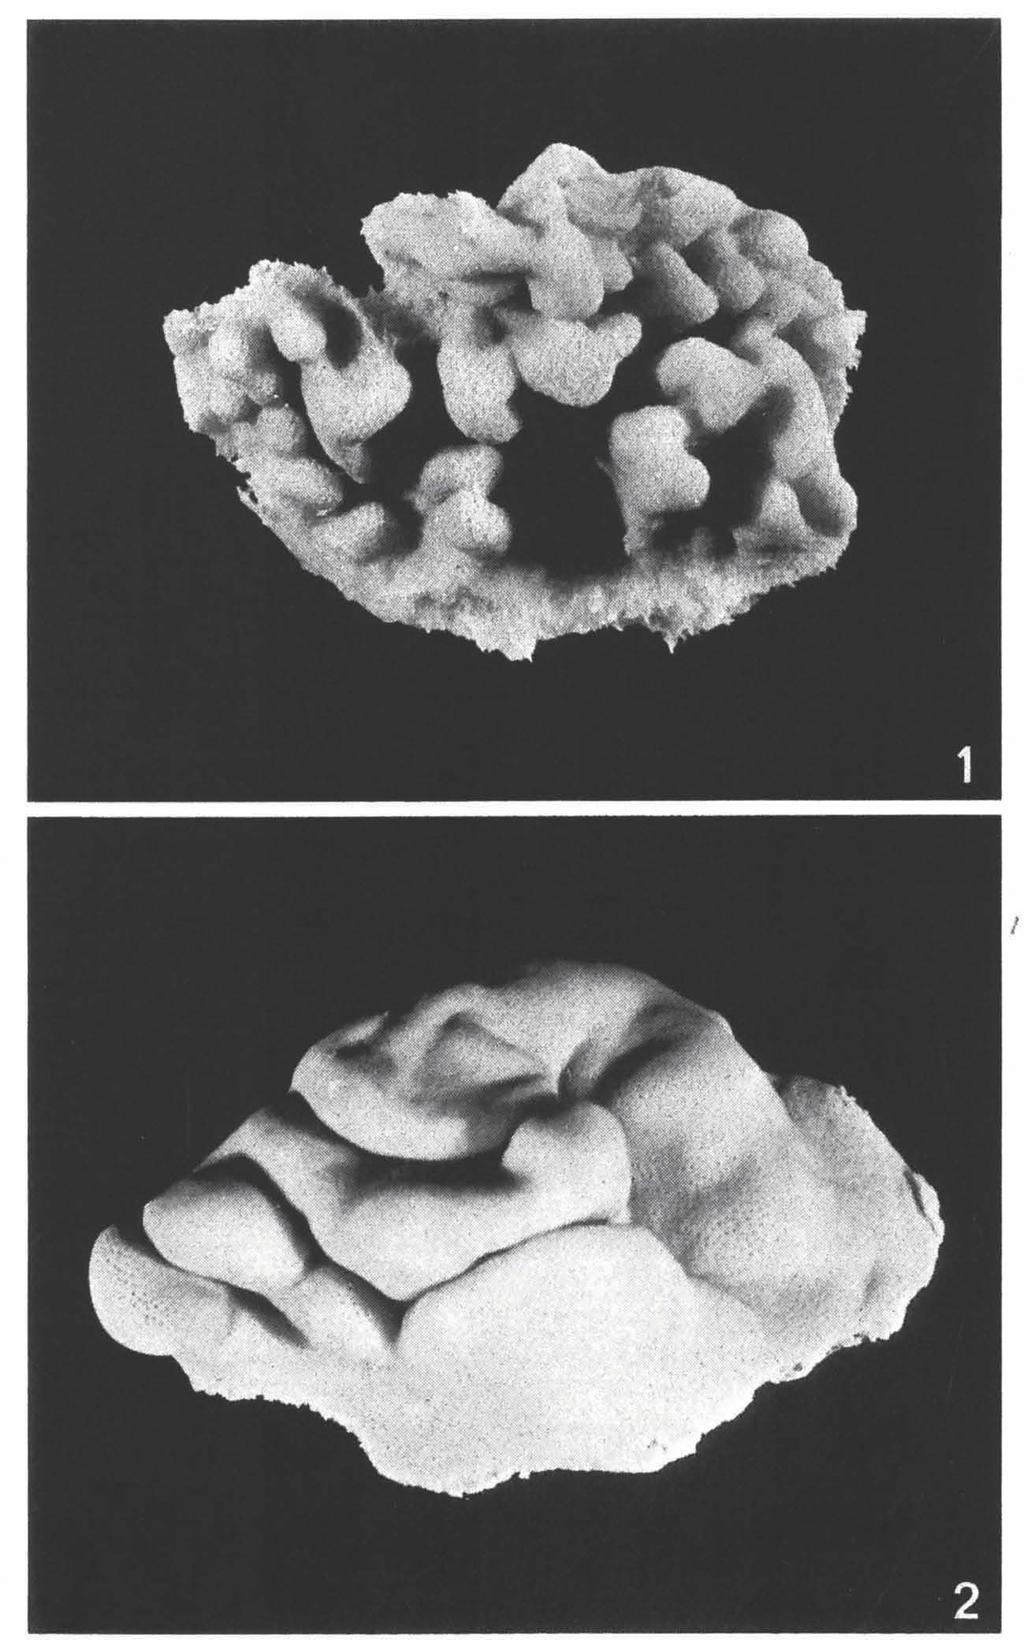 ZOOLOGISCHE VERHANDELINGEN 150 (1977) PL. 4 Fig. I.